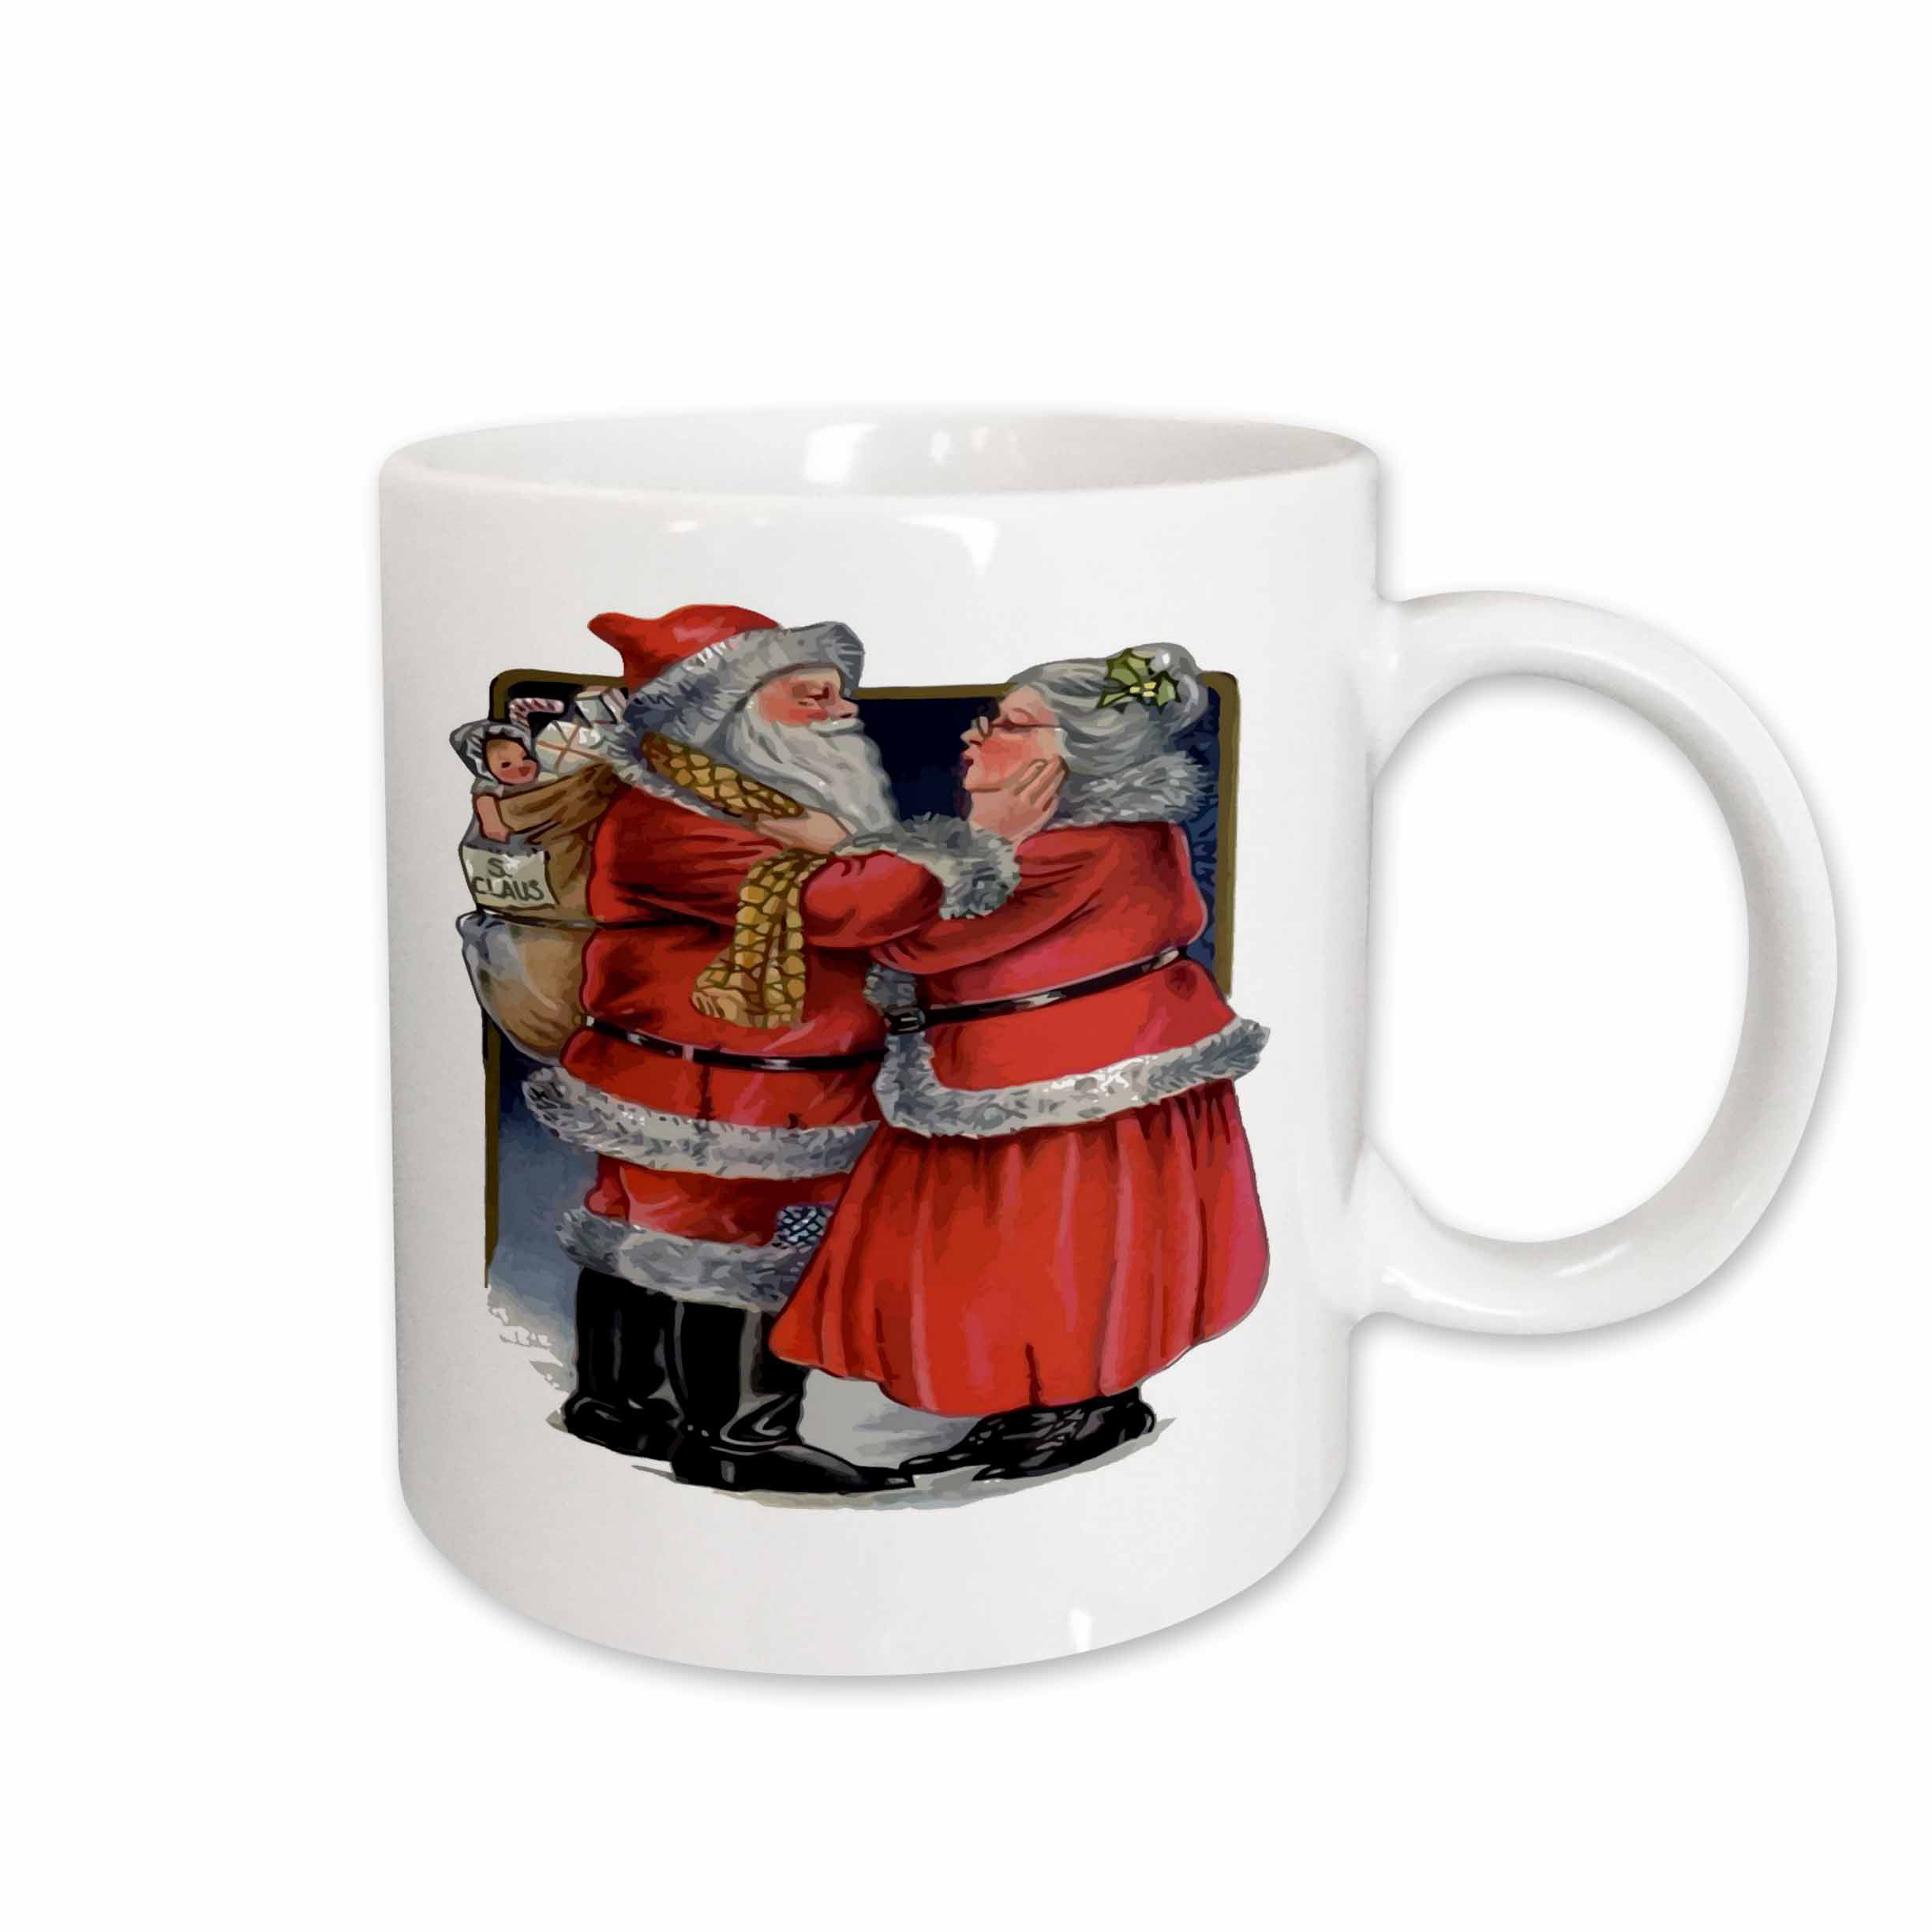 11oz mug Kelly red vintage Printed Ceramic Coffee Tea Cup Gift 